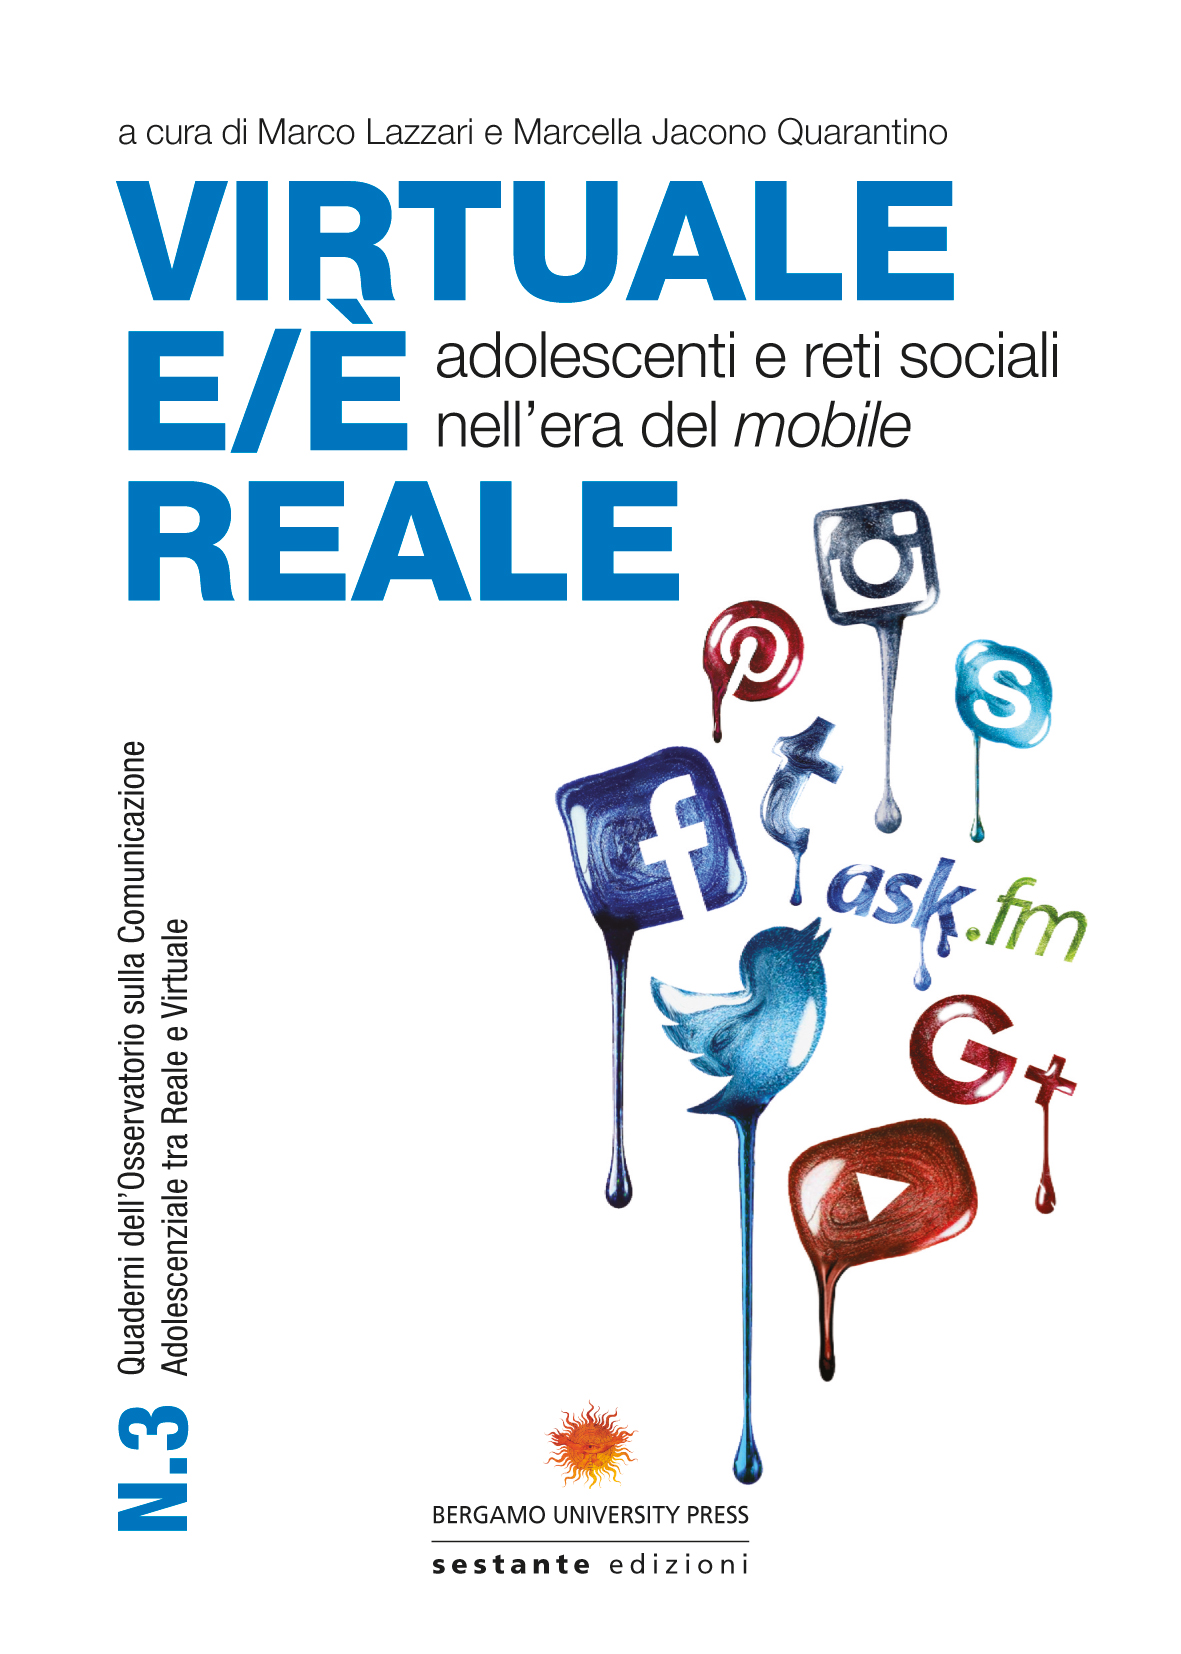 Copertina di Virtuale eè reale, Edizioni Sestante, immagine di Michael Colleoni